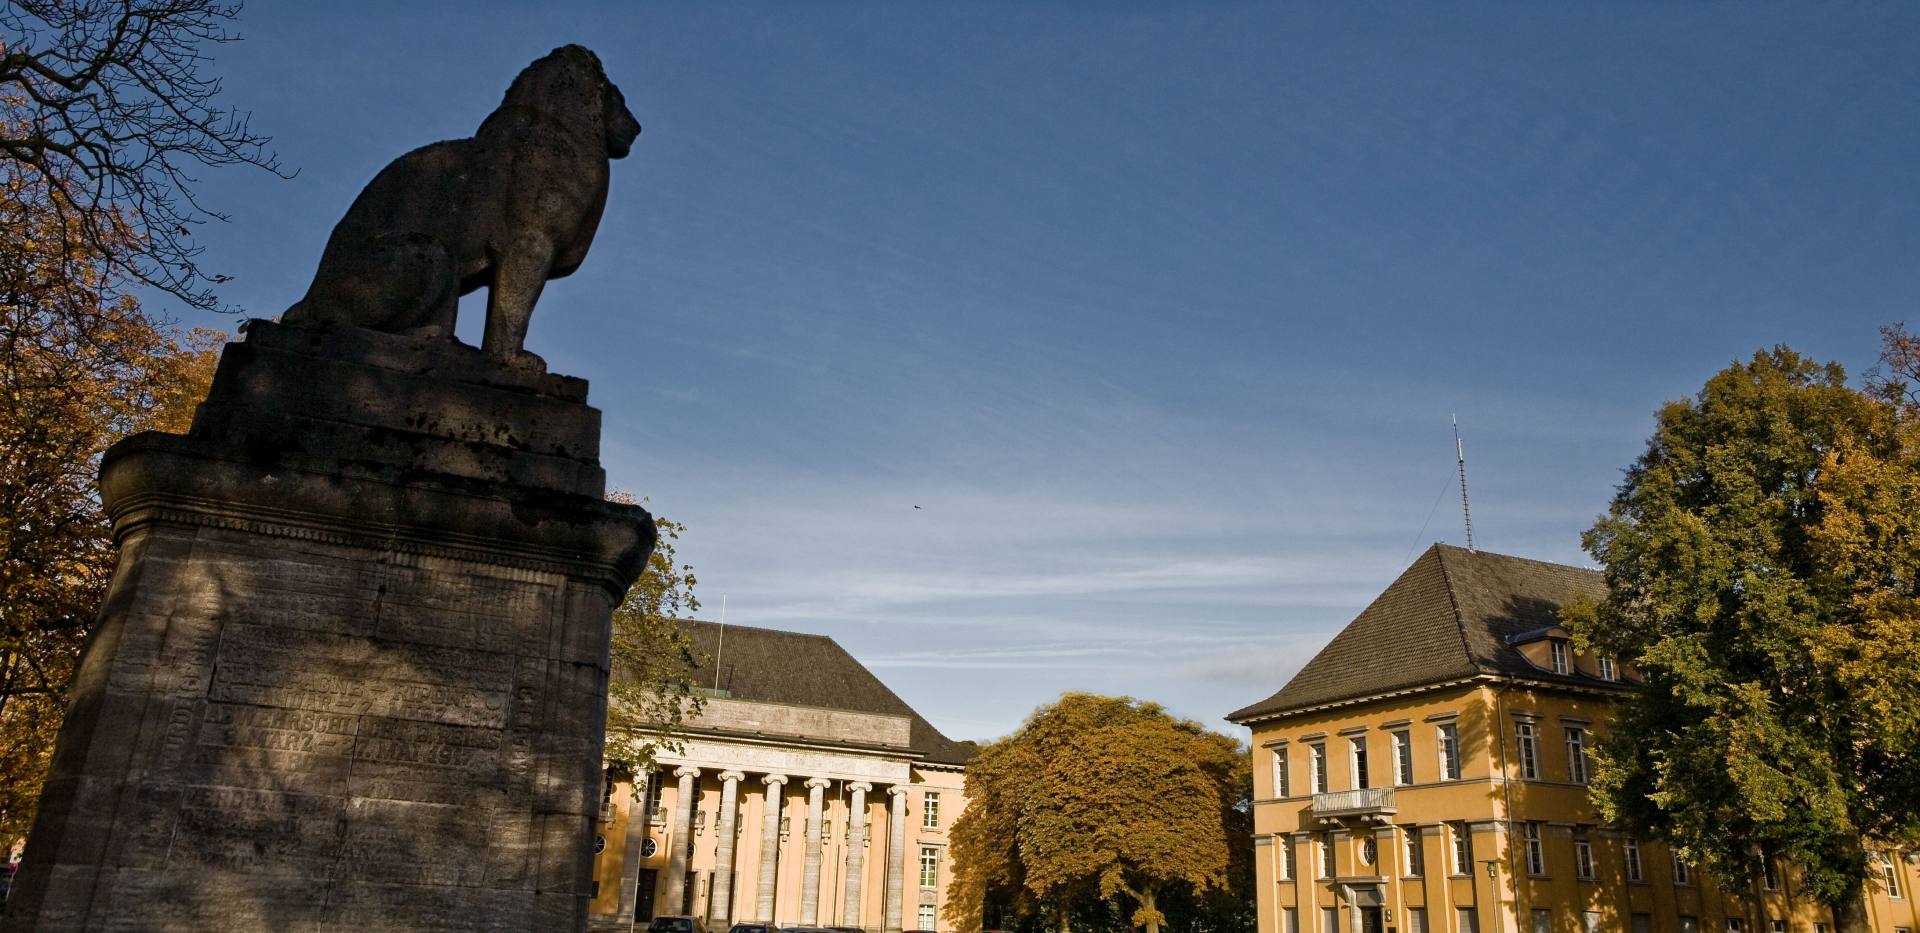 Alter Landtag mit Löwenstatue im Vordergrund.